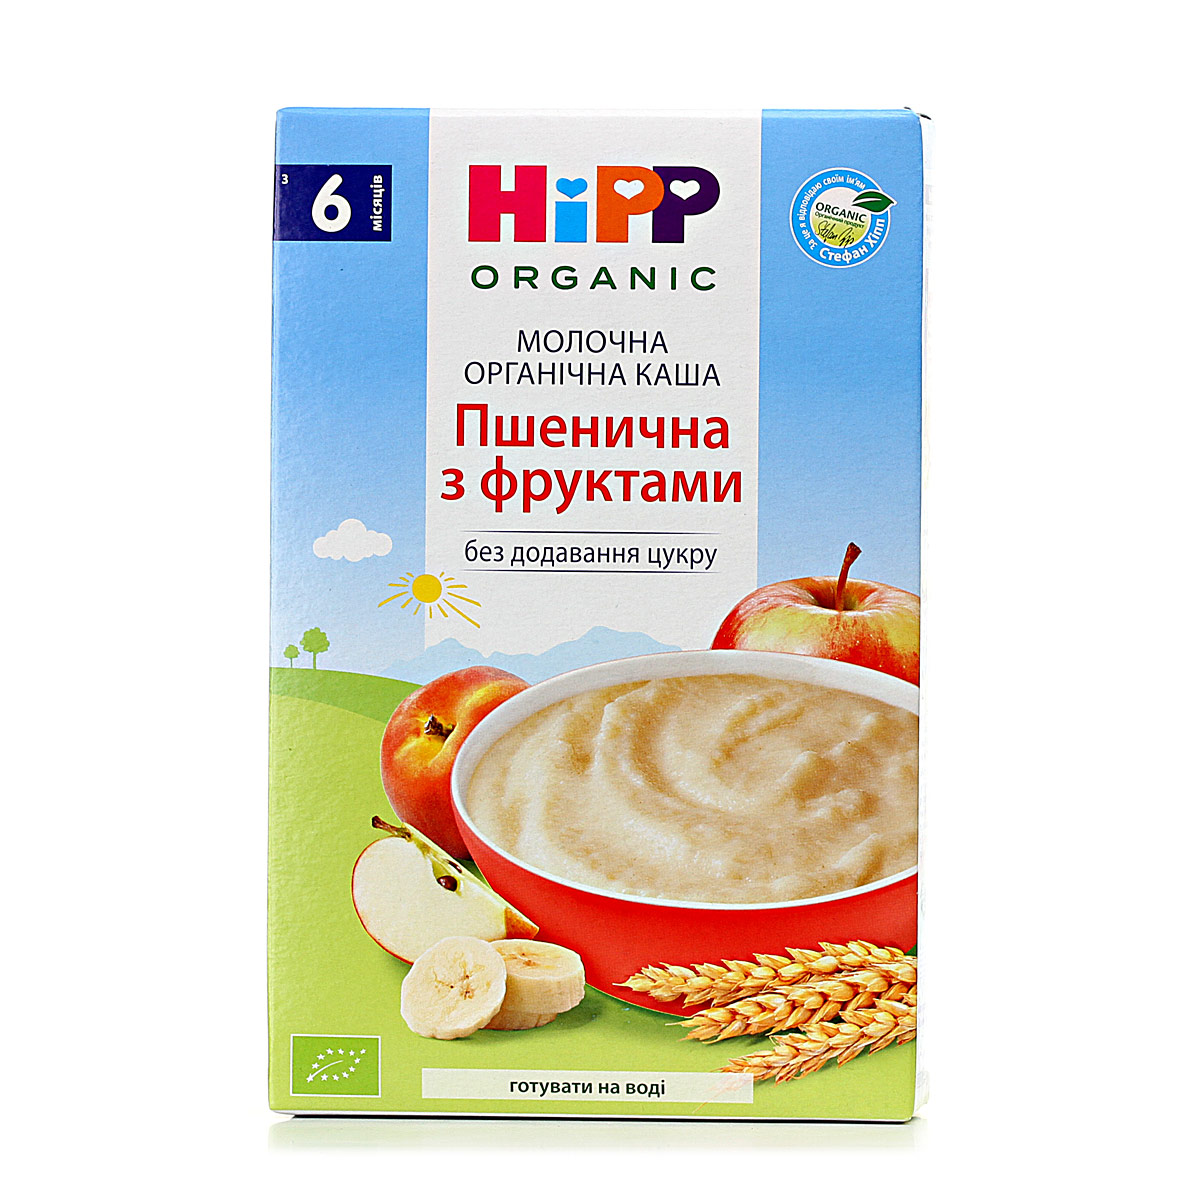 Молочная органическая каша «Пшеничная с фруктами» - фото 6 | Интернет-магазин Shop HiPP